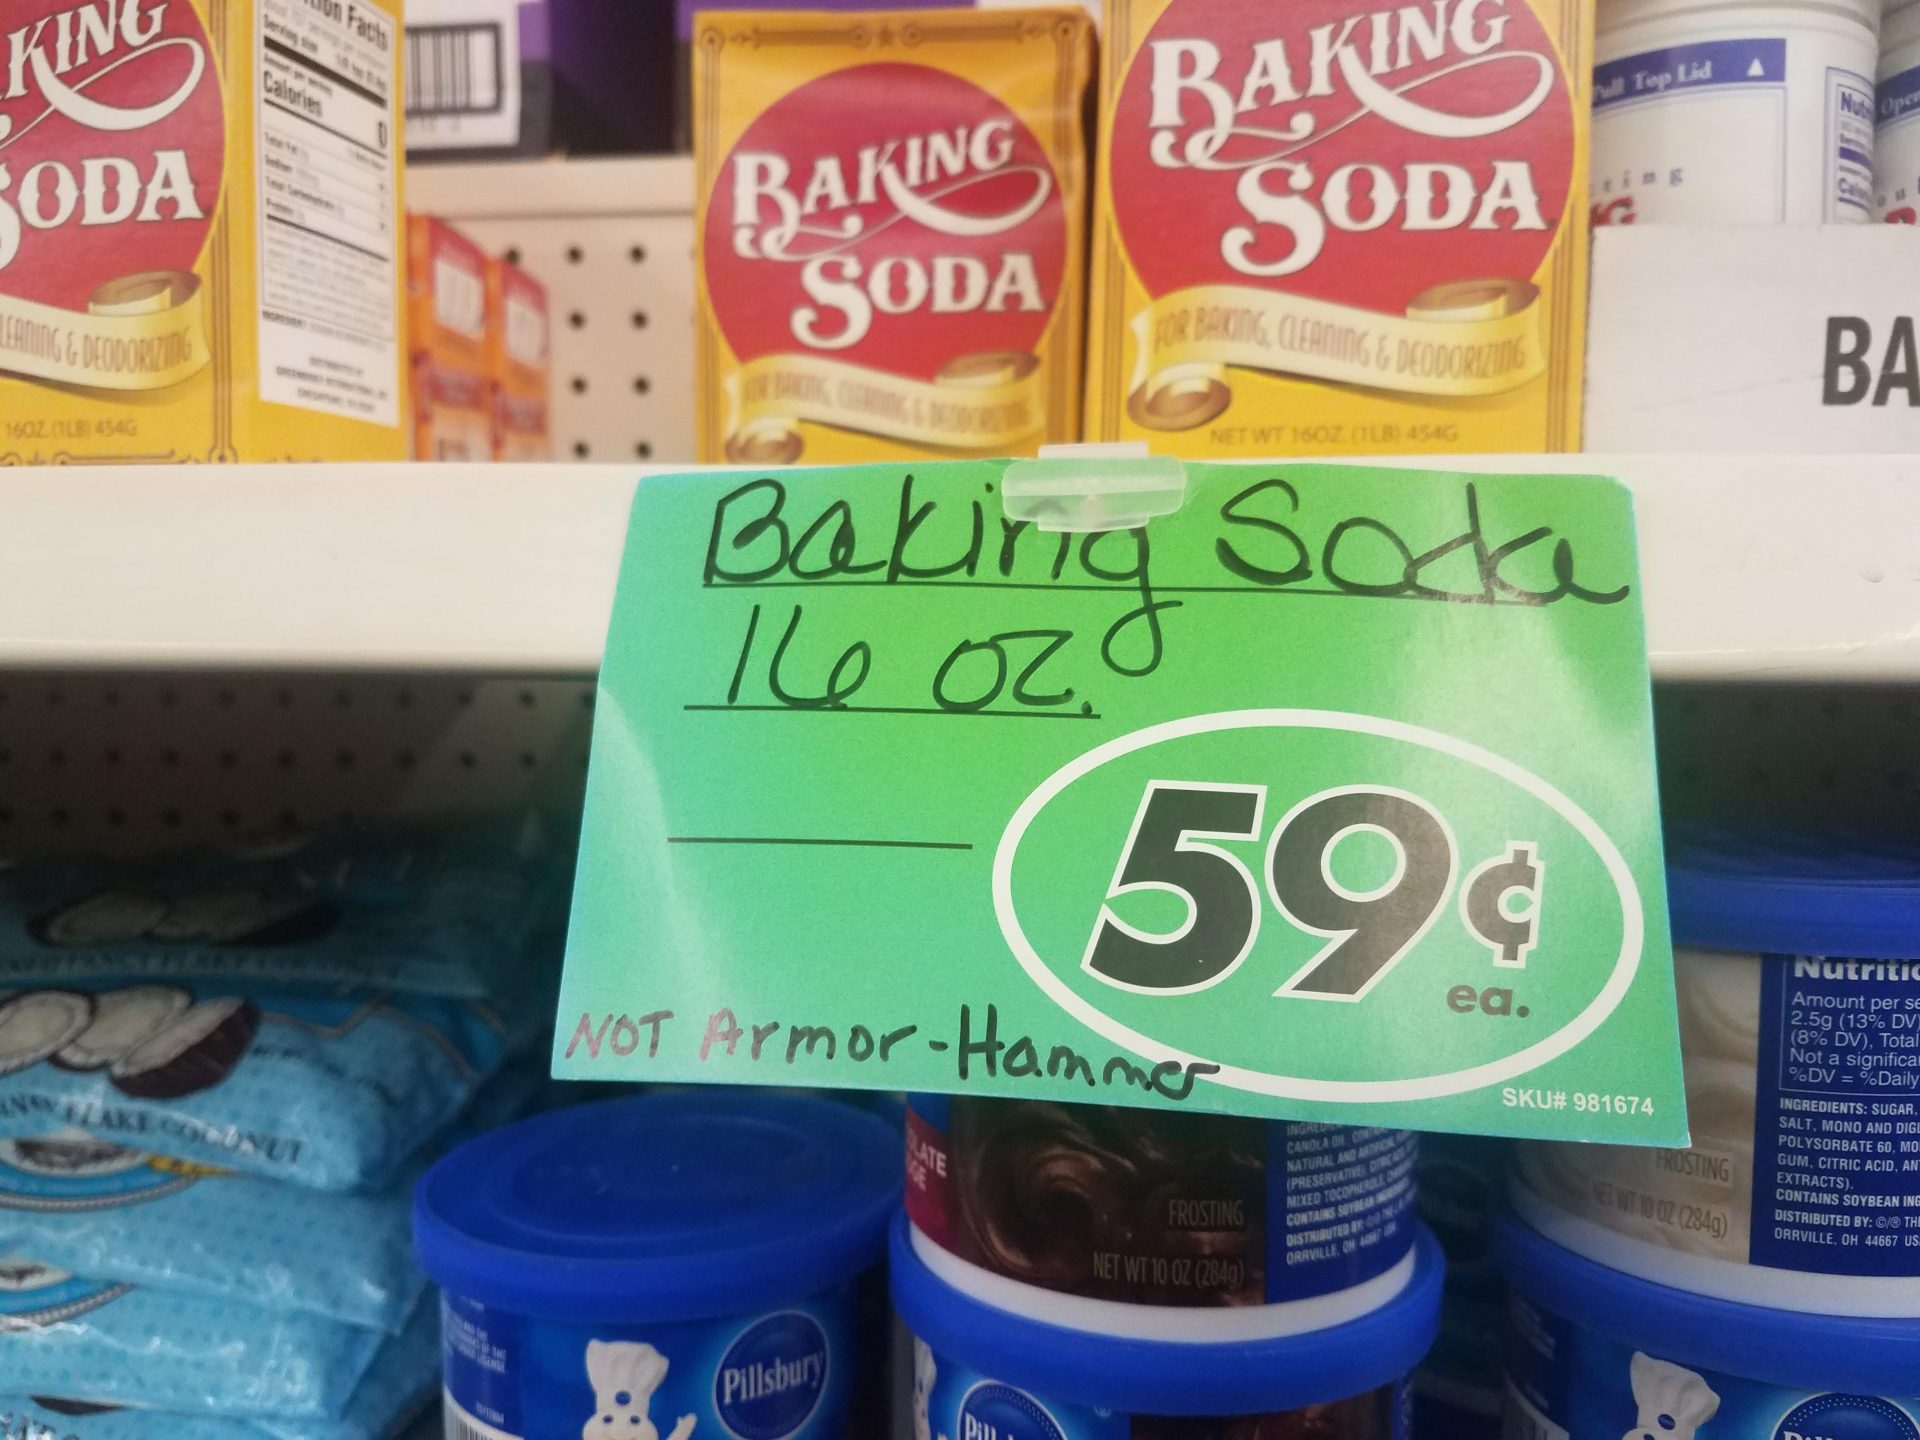 Baking Soda – Don’t Buy